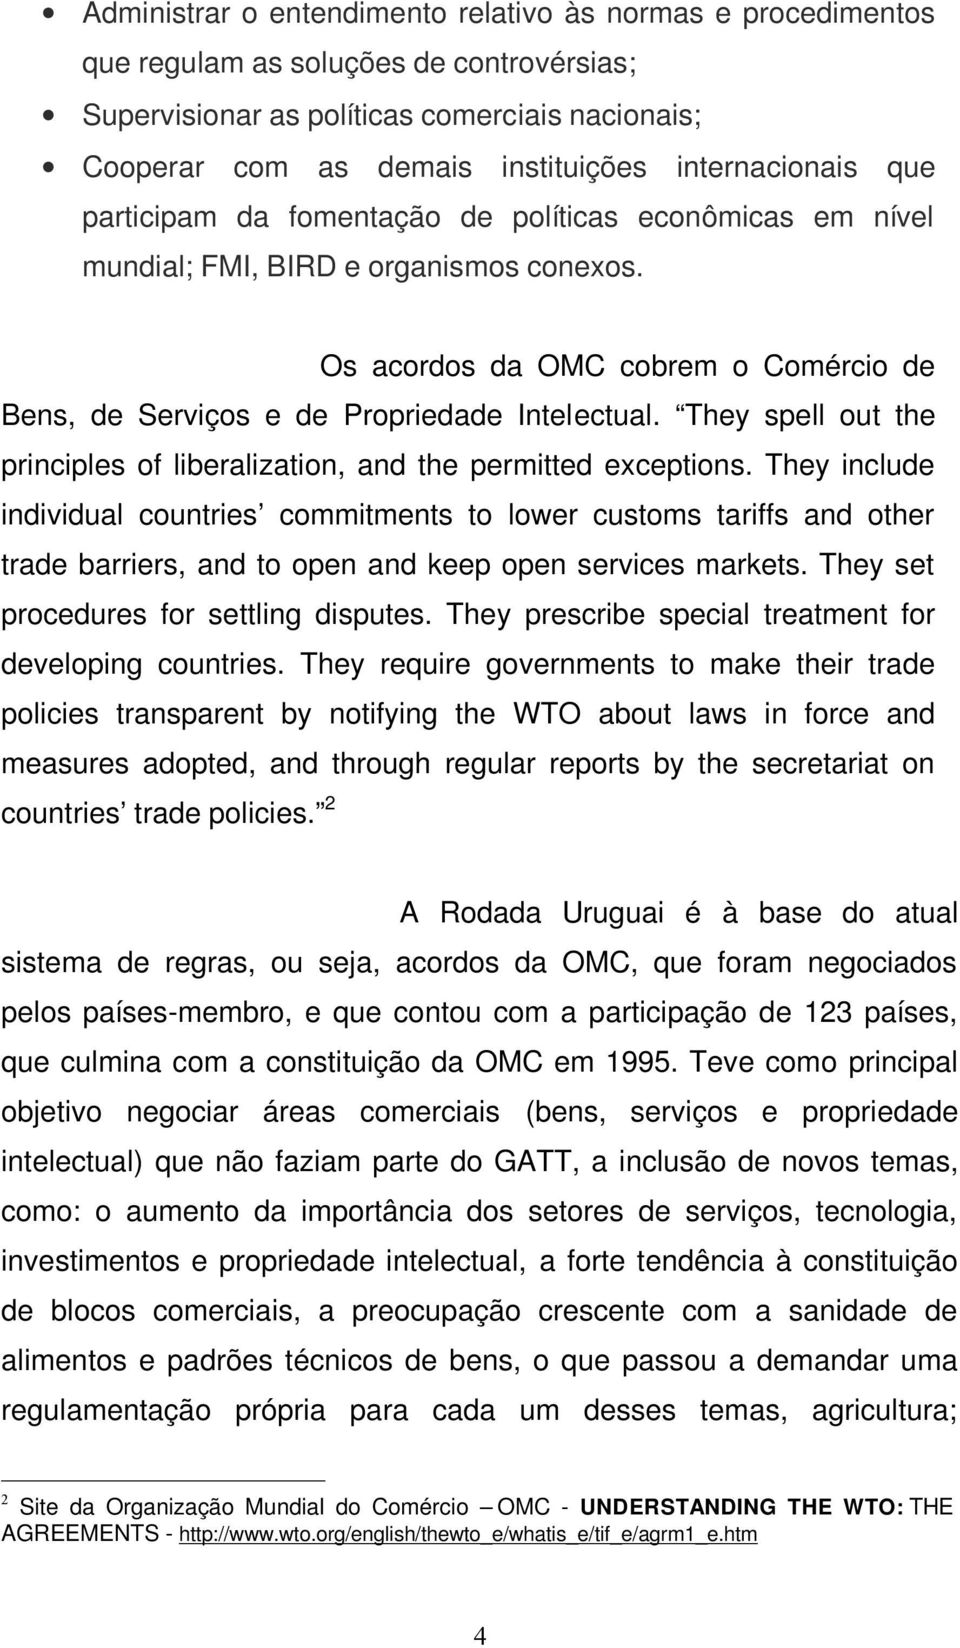 Os acordos da OMC cobrem o Comércio de Bens, de Serviços e de Propriedade Intelectual. They spell out the principles of liberalization, and the permitted exceptions.